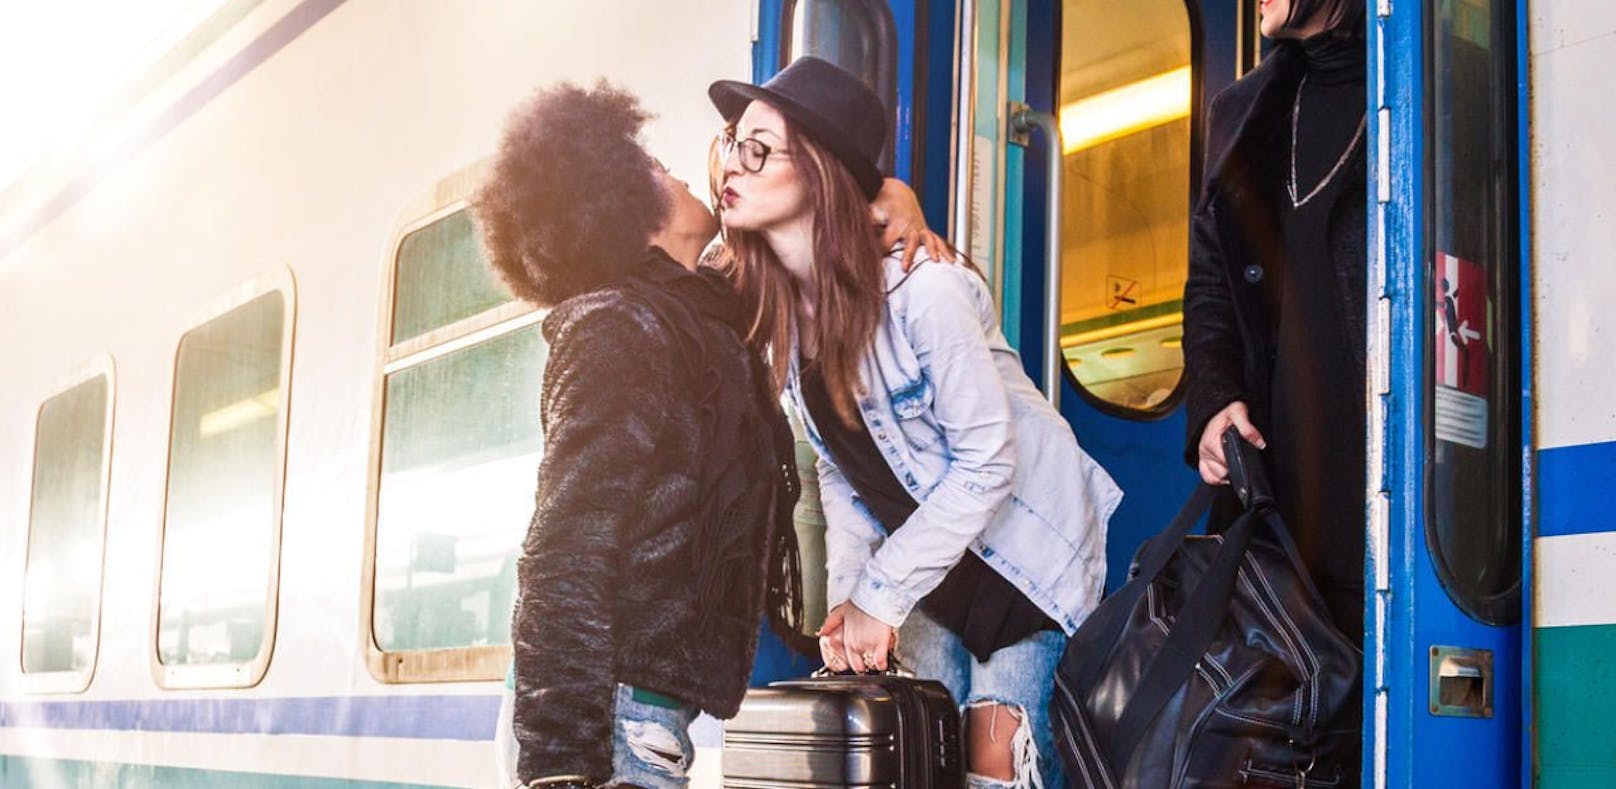 Küsse am Bahnsteig? in Paris strengstens verboten!